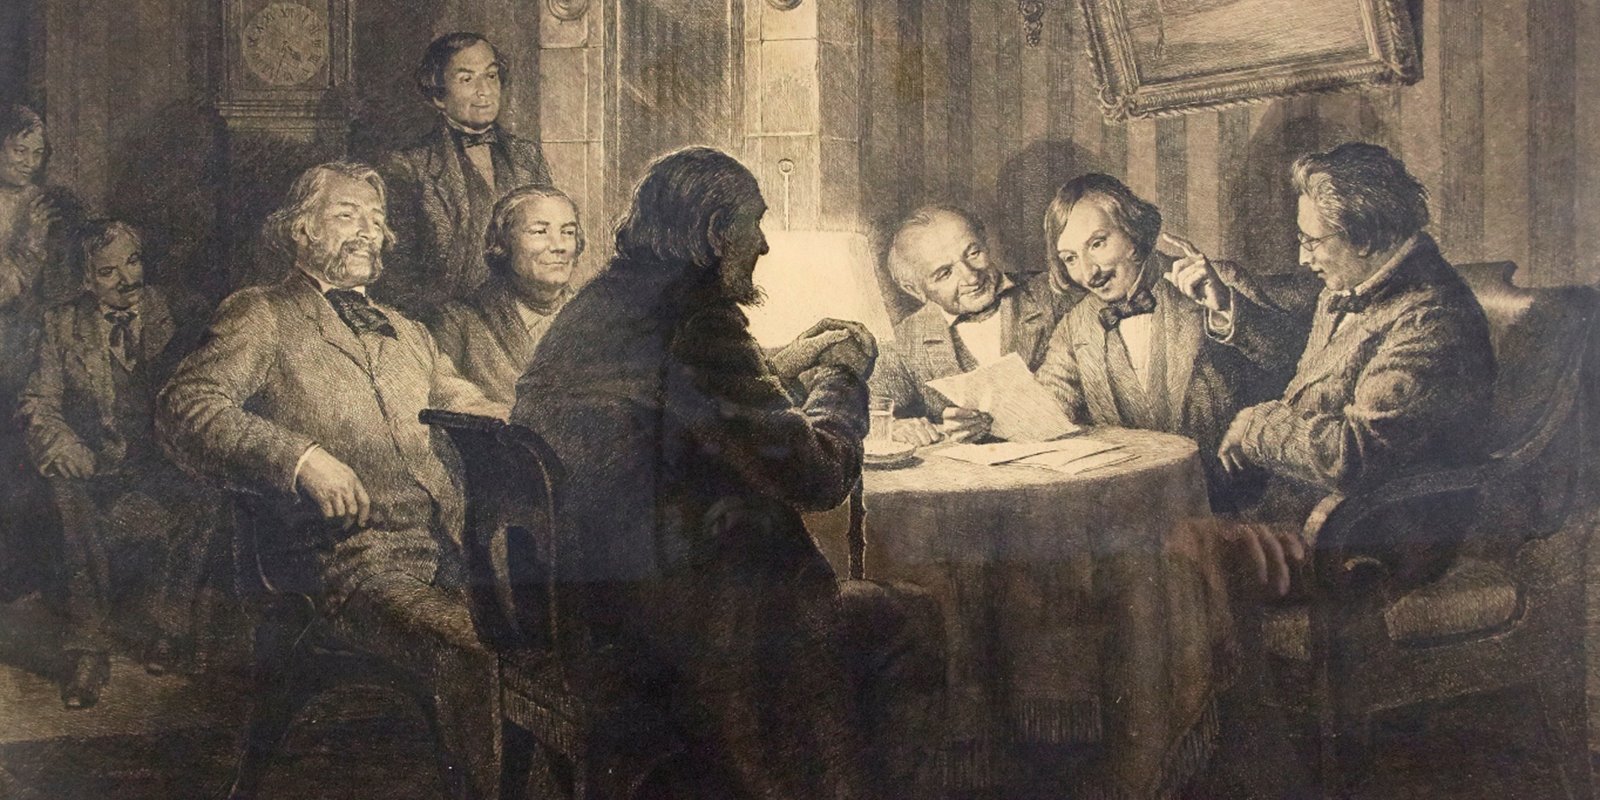 Е мертвые души. Маковский. «Гоголь читает «Ревизора» 5 ноября 1851 года». Гоголь читает Ревизора 5 ноября 1851 года.